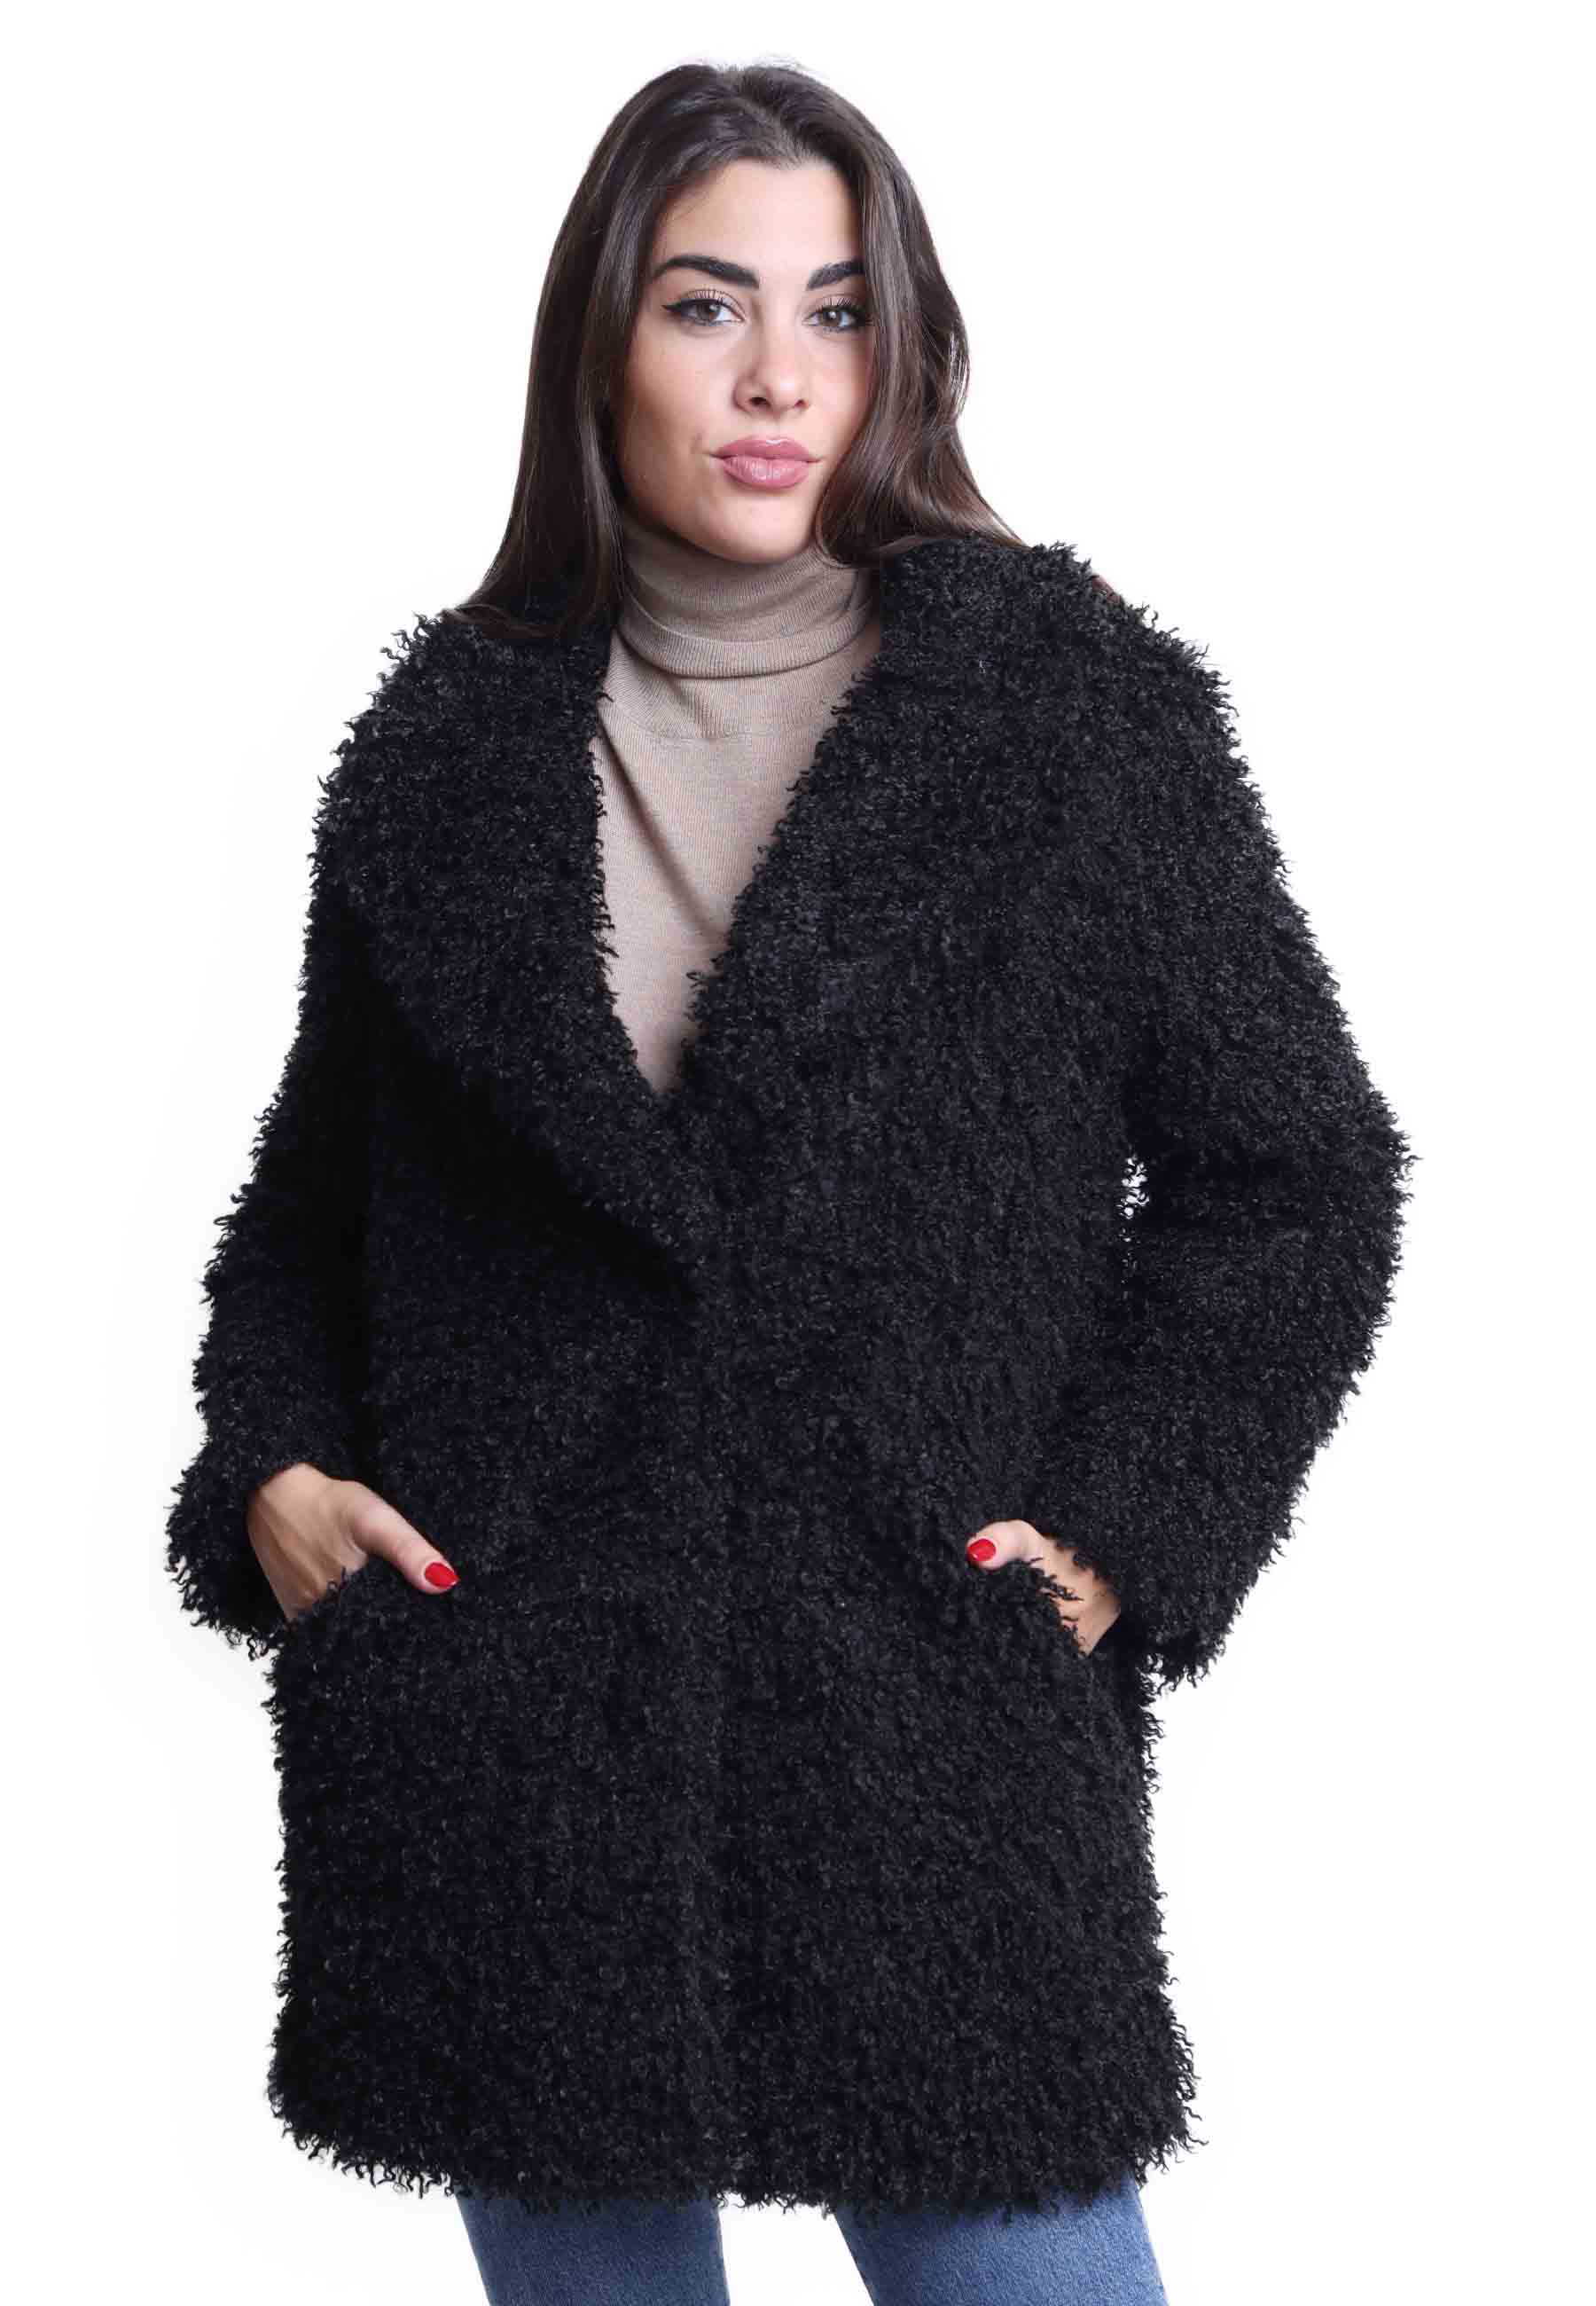 Manteaux teddy pour femmes en éco-fourrure noire avec grand boutonnage simple à un bouton